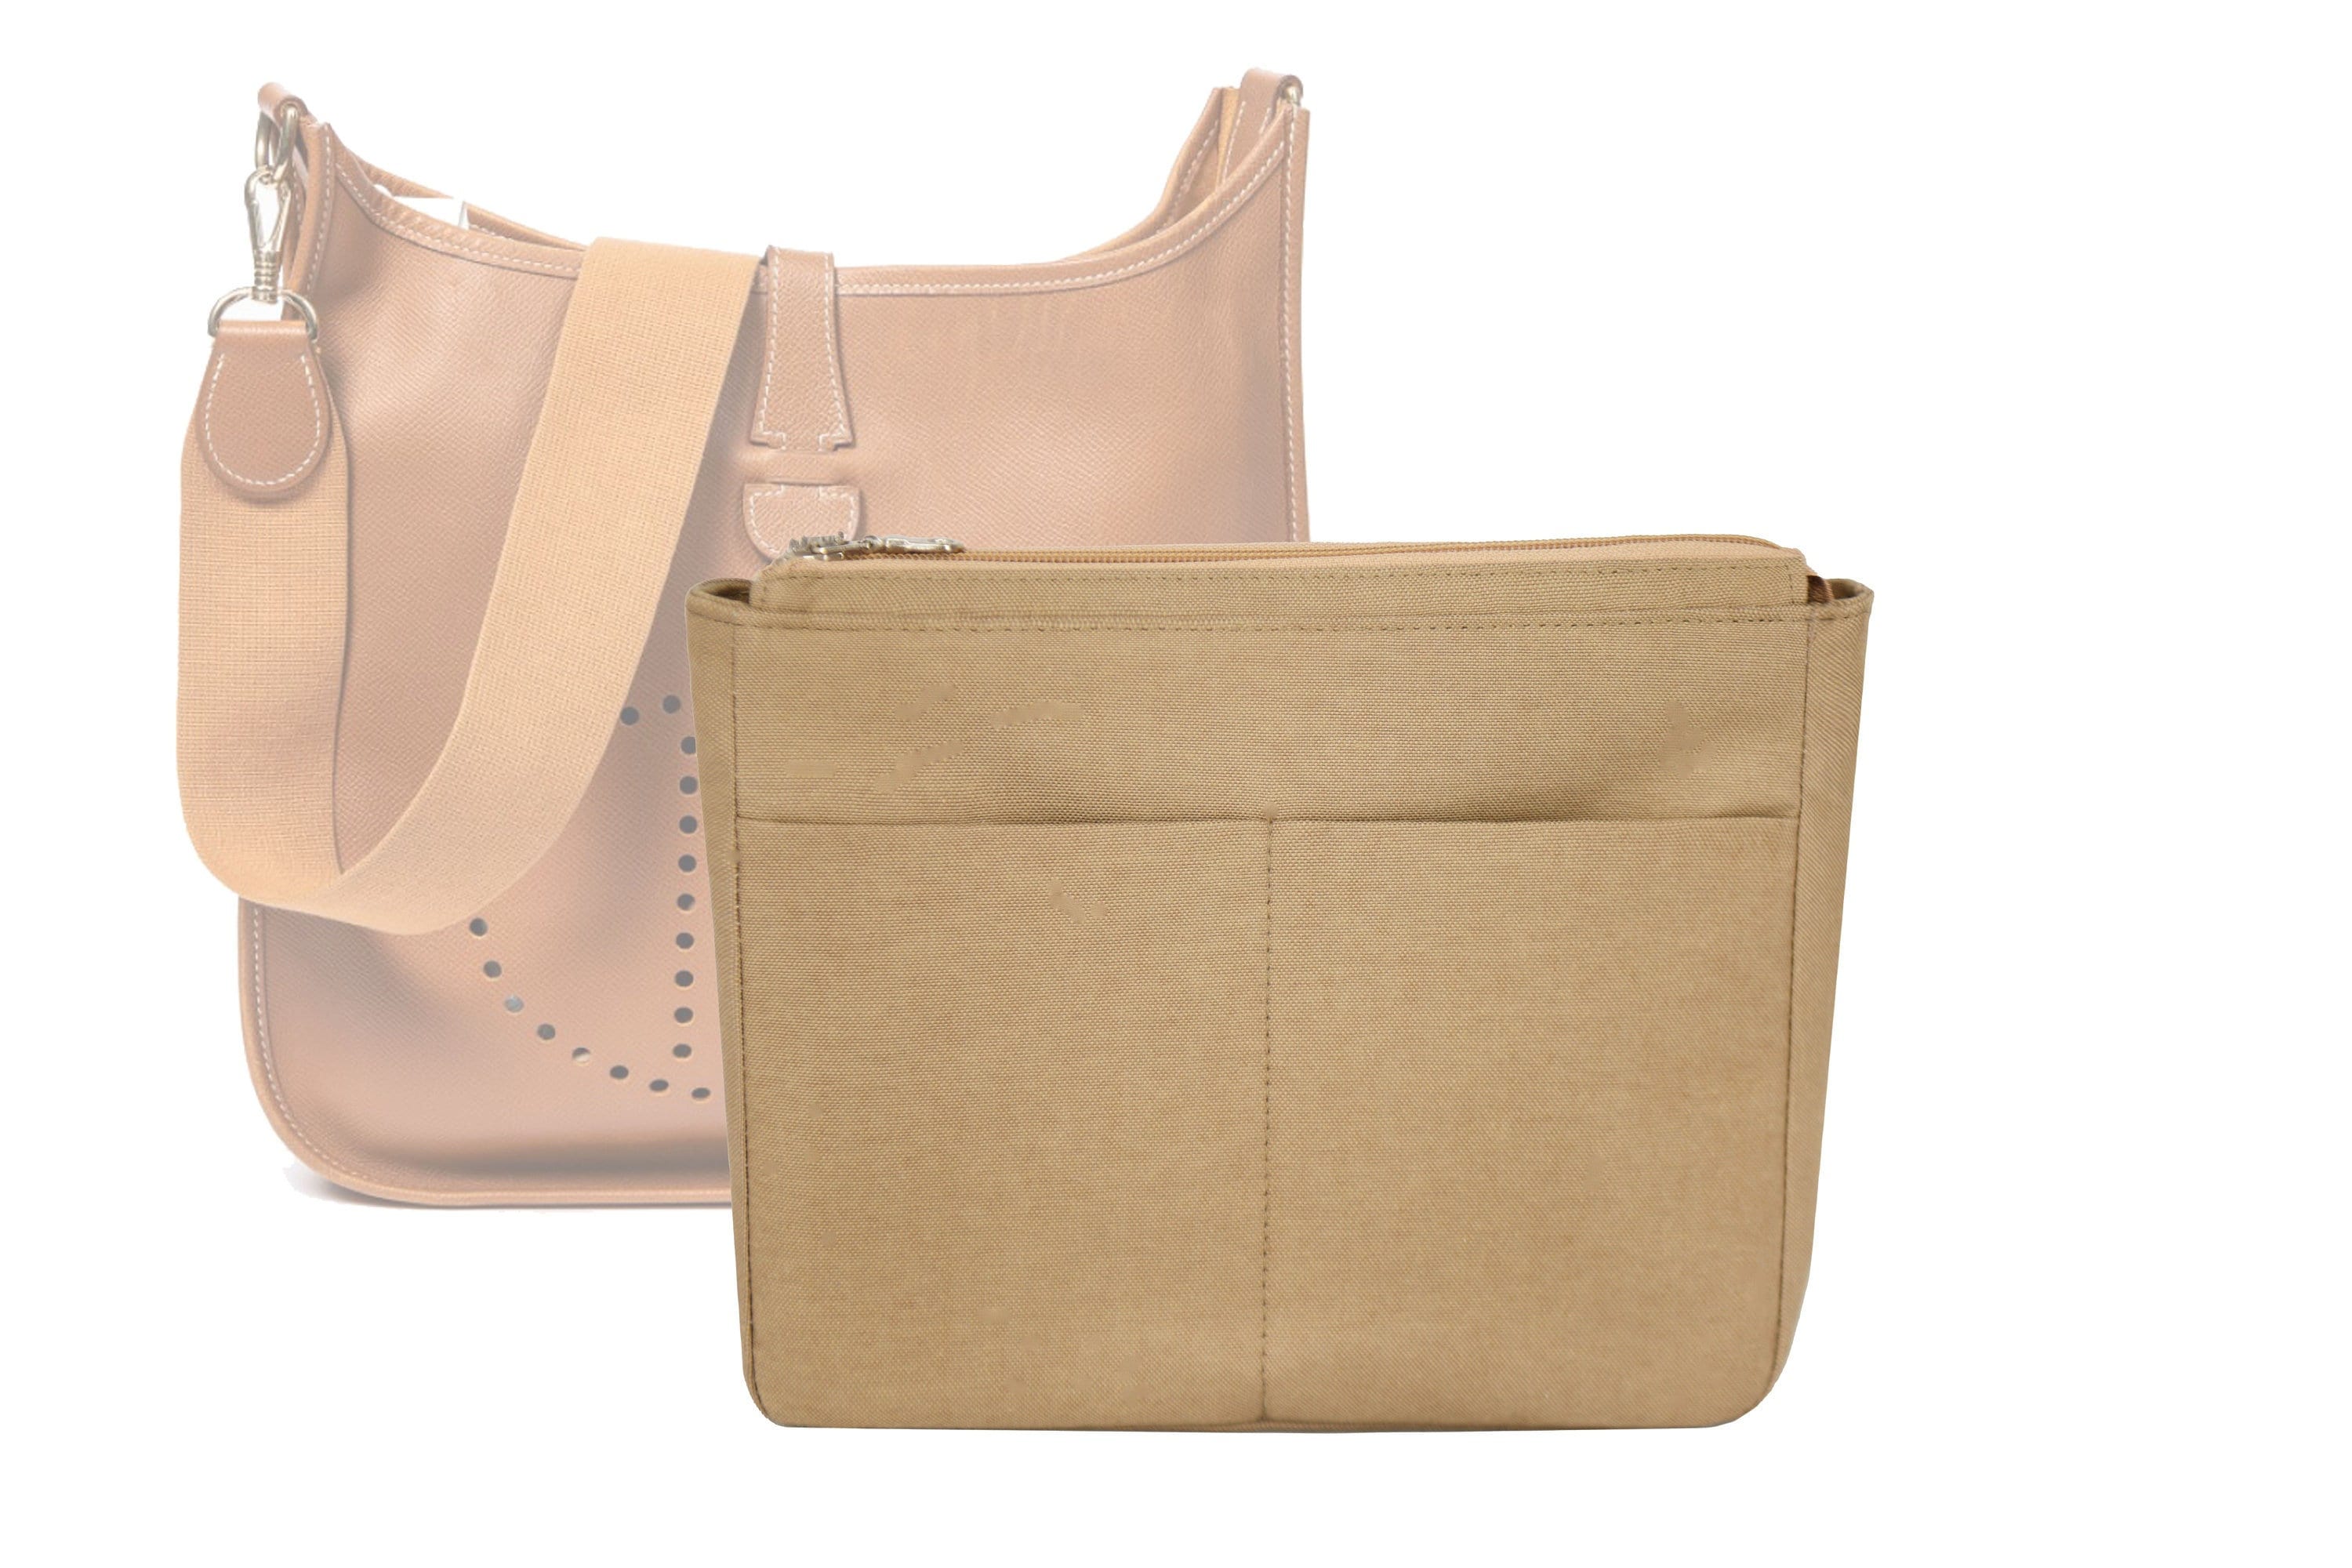 WUTA 100-110CM Canvas Bag Strap For Hermes Evelynn Handbags Shoulder Strap  Replacement Retrofit Extension Strap Bags Accessories